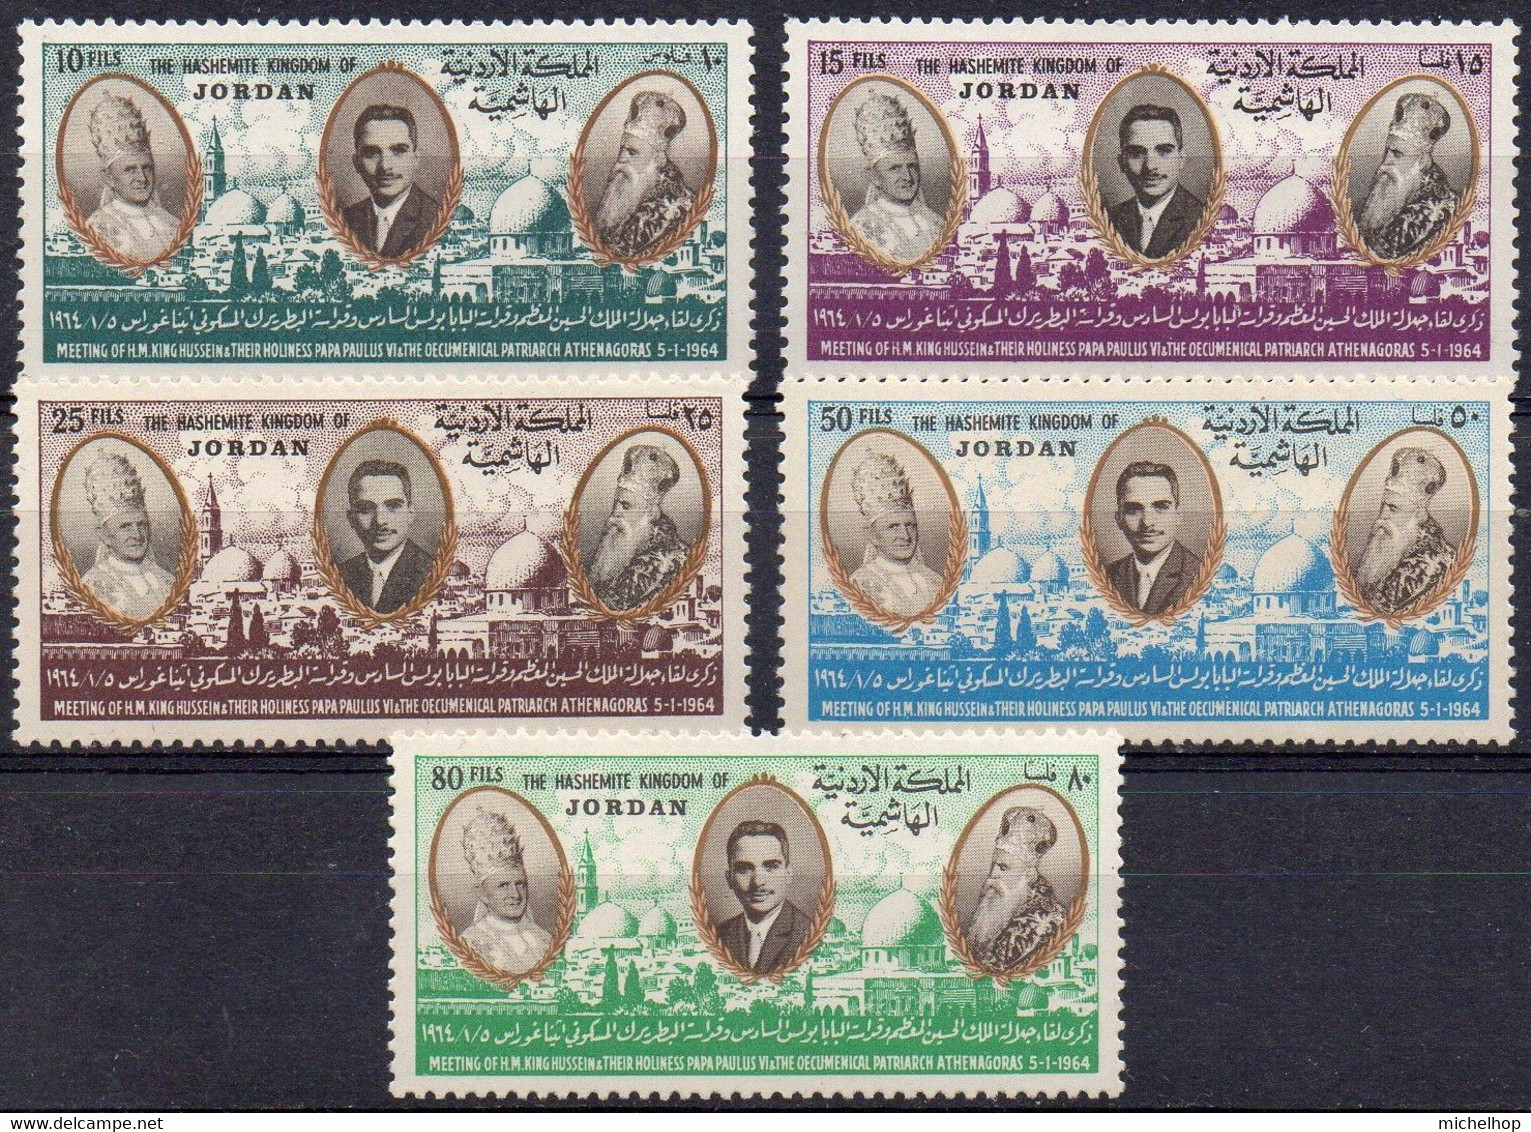 JORDAN - 1964 - Visit Of Pope Paulus VI - Set Of 5 Stamps (mint Never Hinged) - Jordan